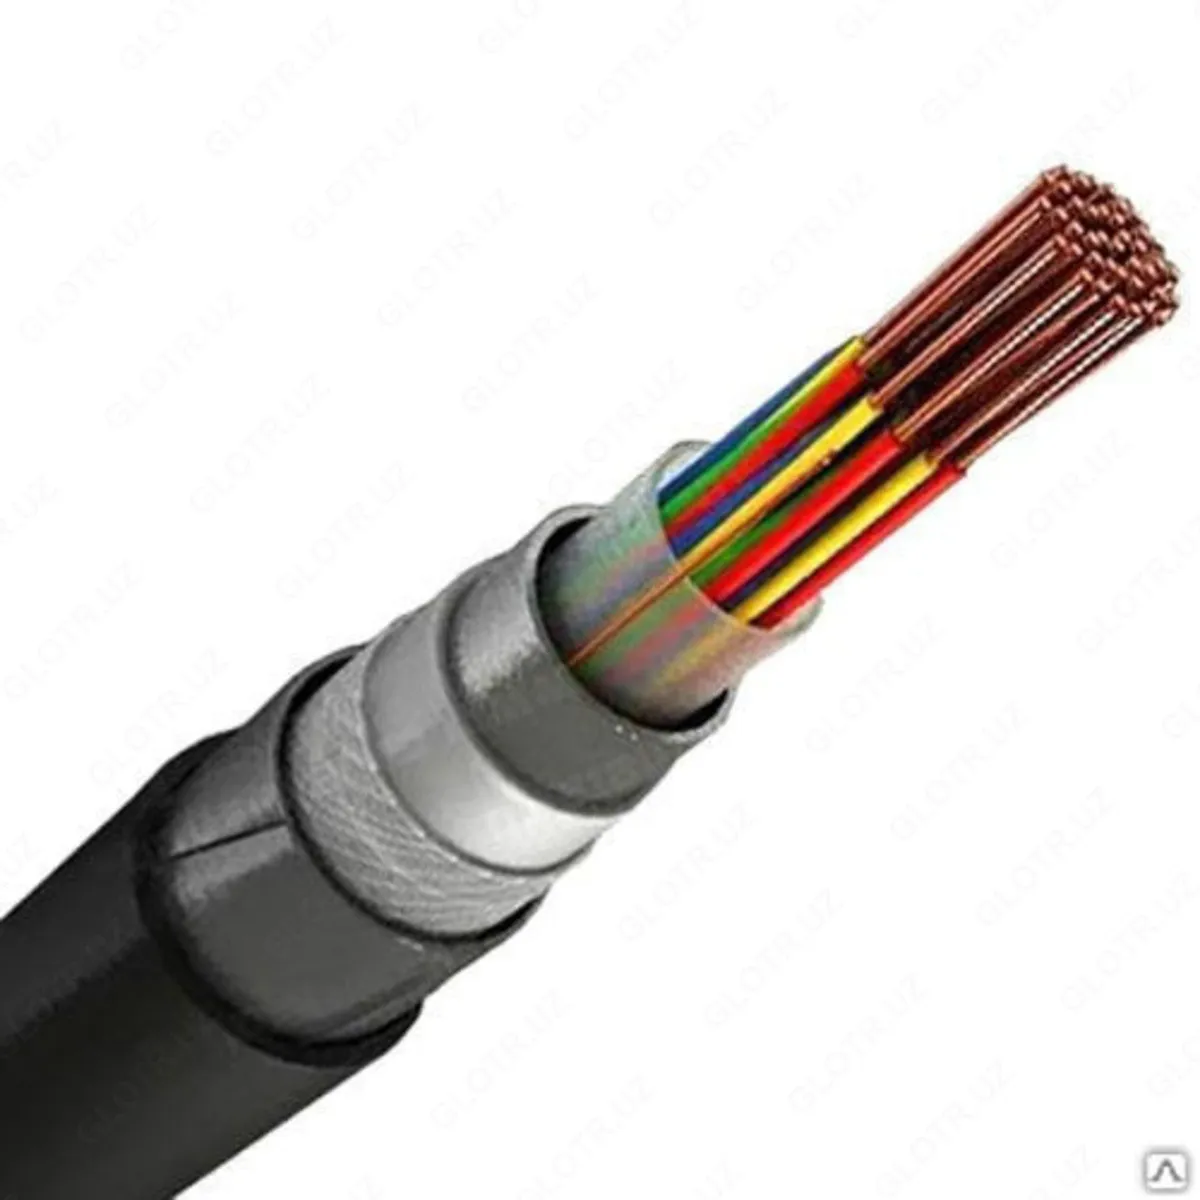 SBPU 12x2x0.9 juft burama signalni blokirovka qiluvchi kabellar#1